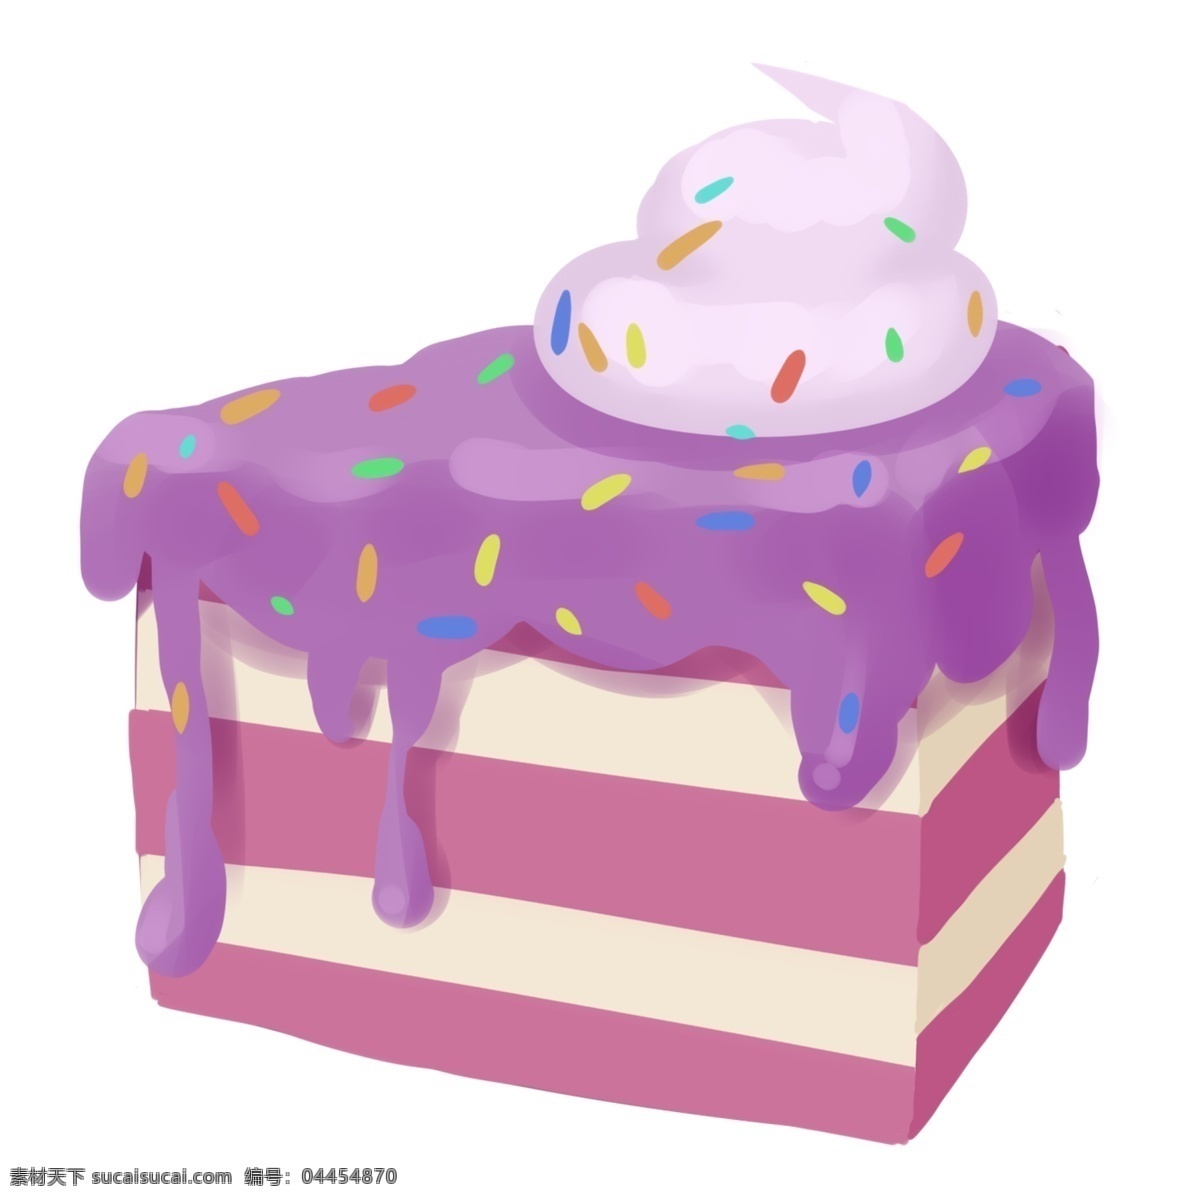 一块 紫色 蛋糕 插画 一块蛋糕 紫色蛋糕 蛋糕插图 美食 蛋糕小吃 蓝莓蛋糕 奶油蛋糕